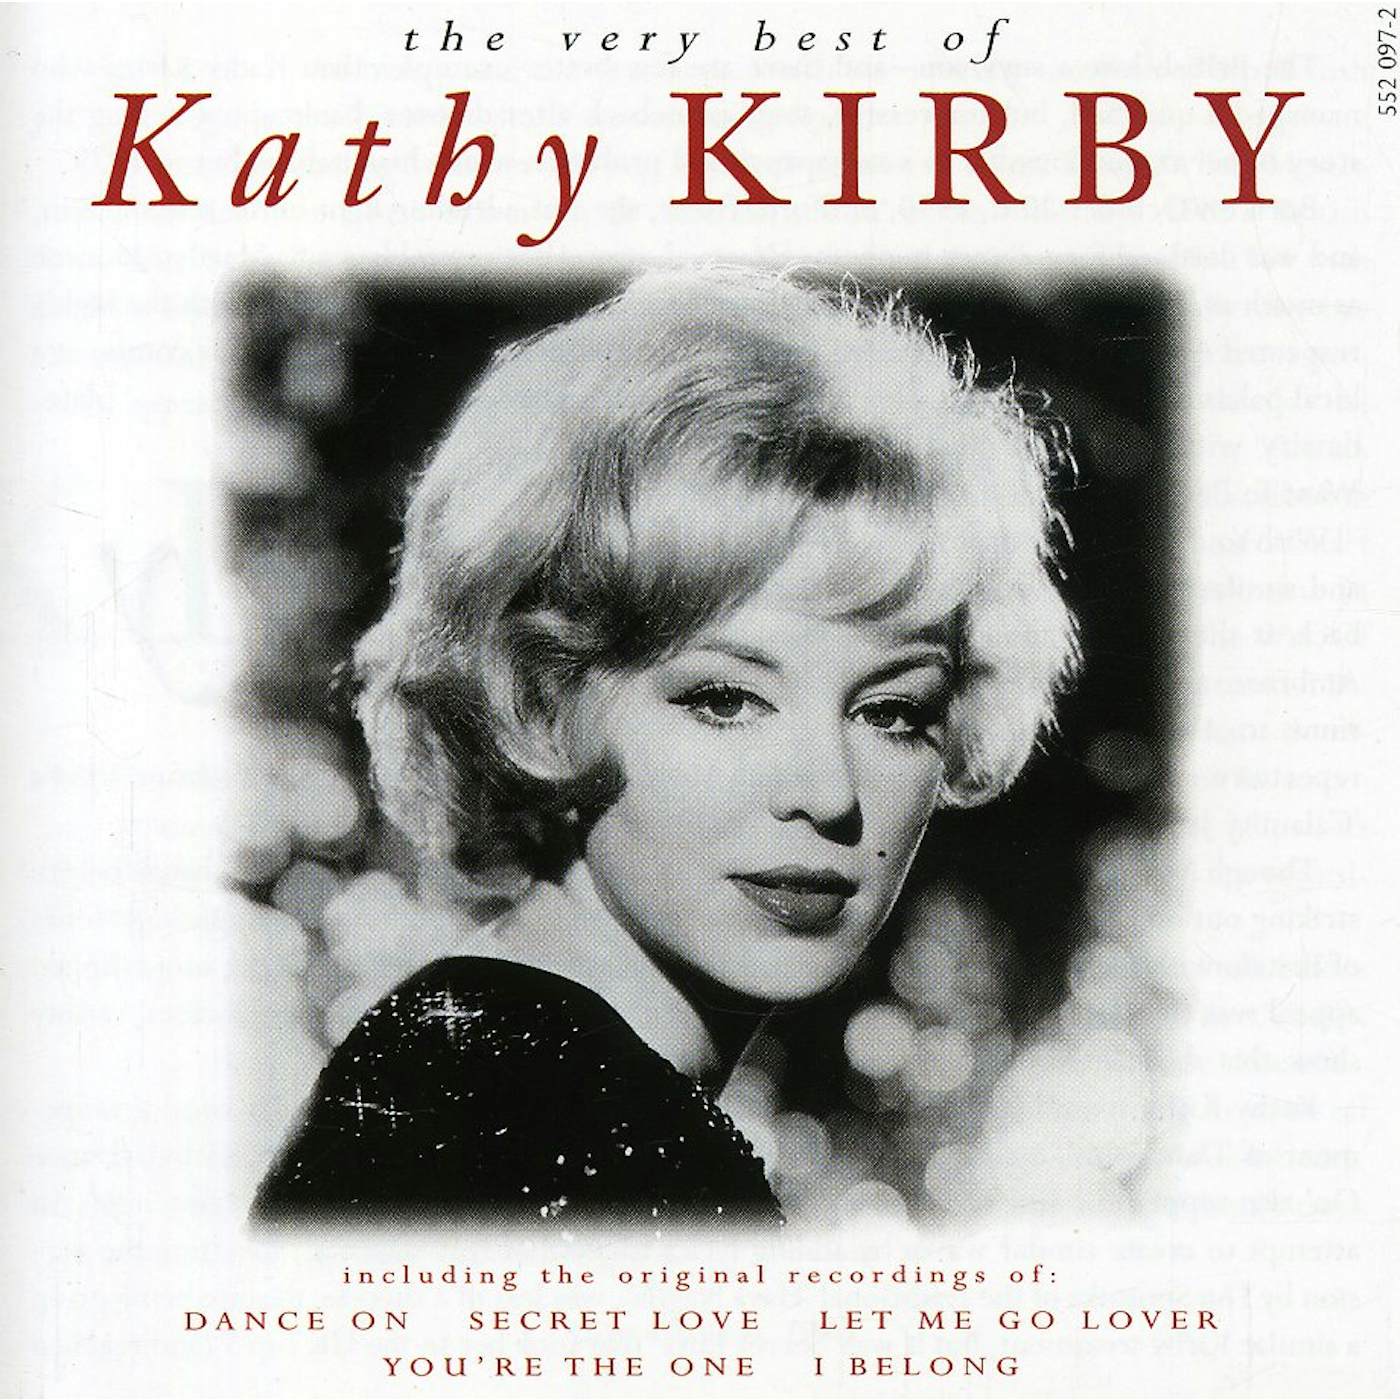 Kathy Kirby VERY BEST OF CD